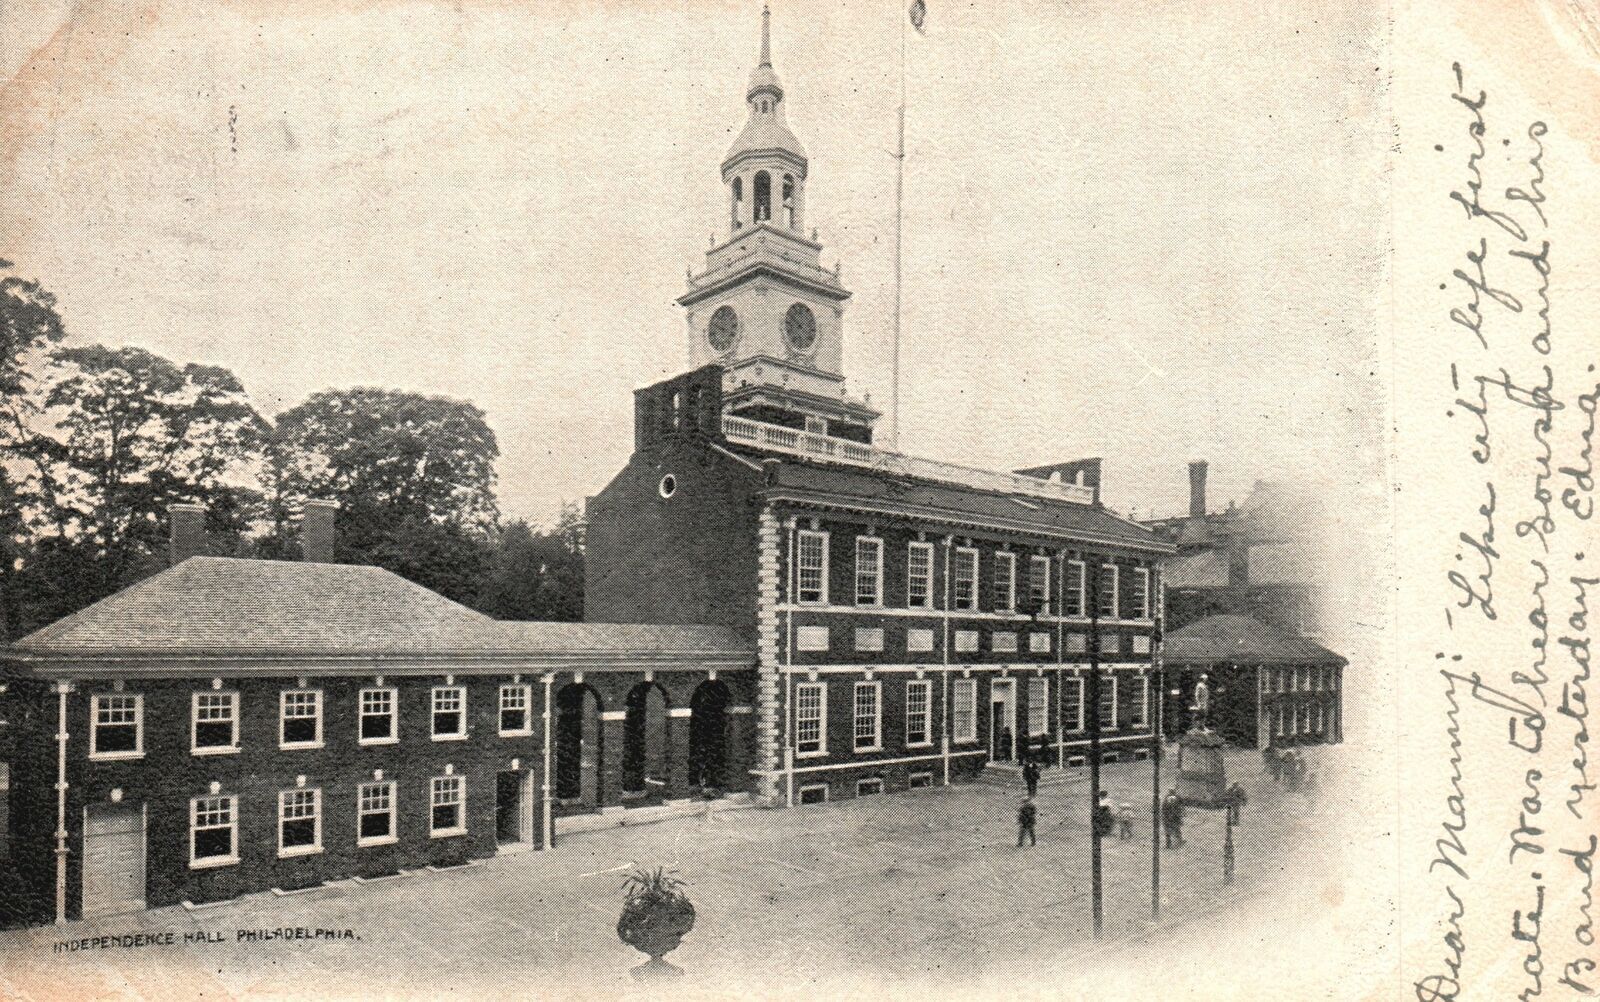 Vintage Postcard Daniel 1906 Independence Hall Bldg. Philadelphia Pennsylvania